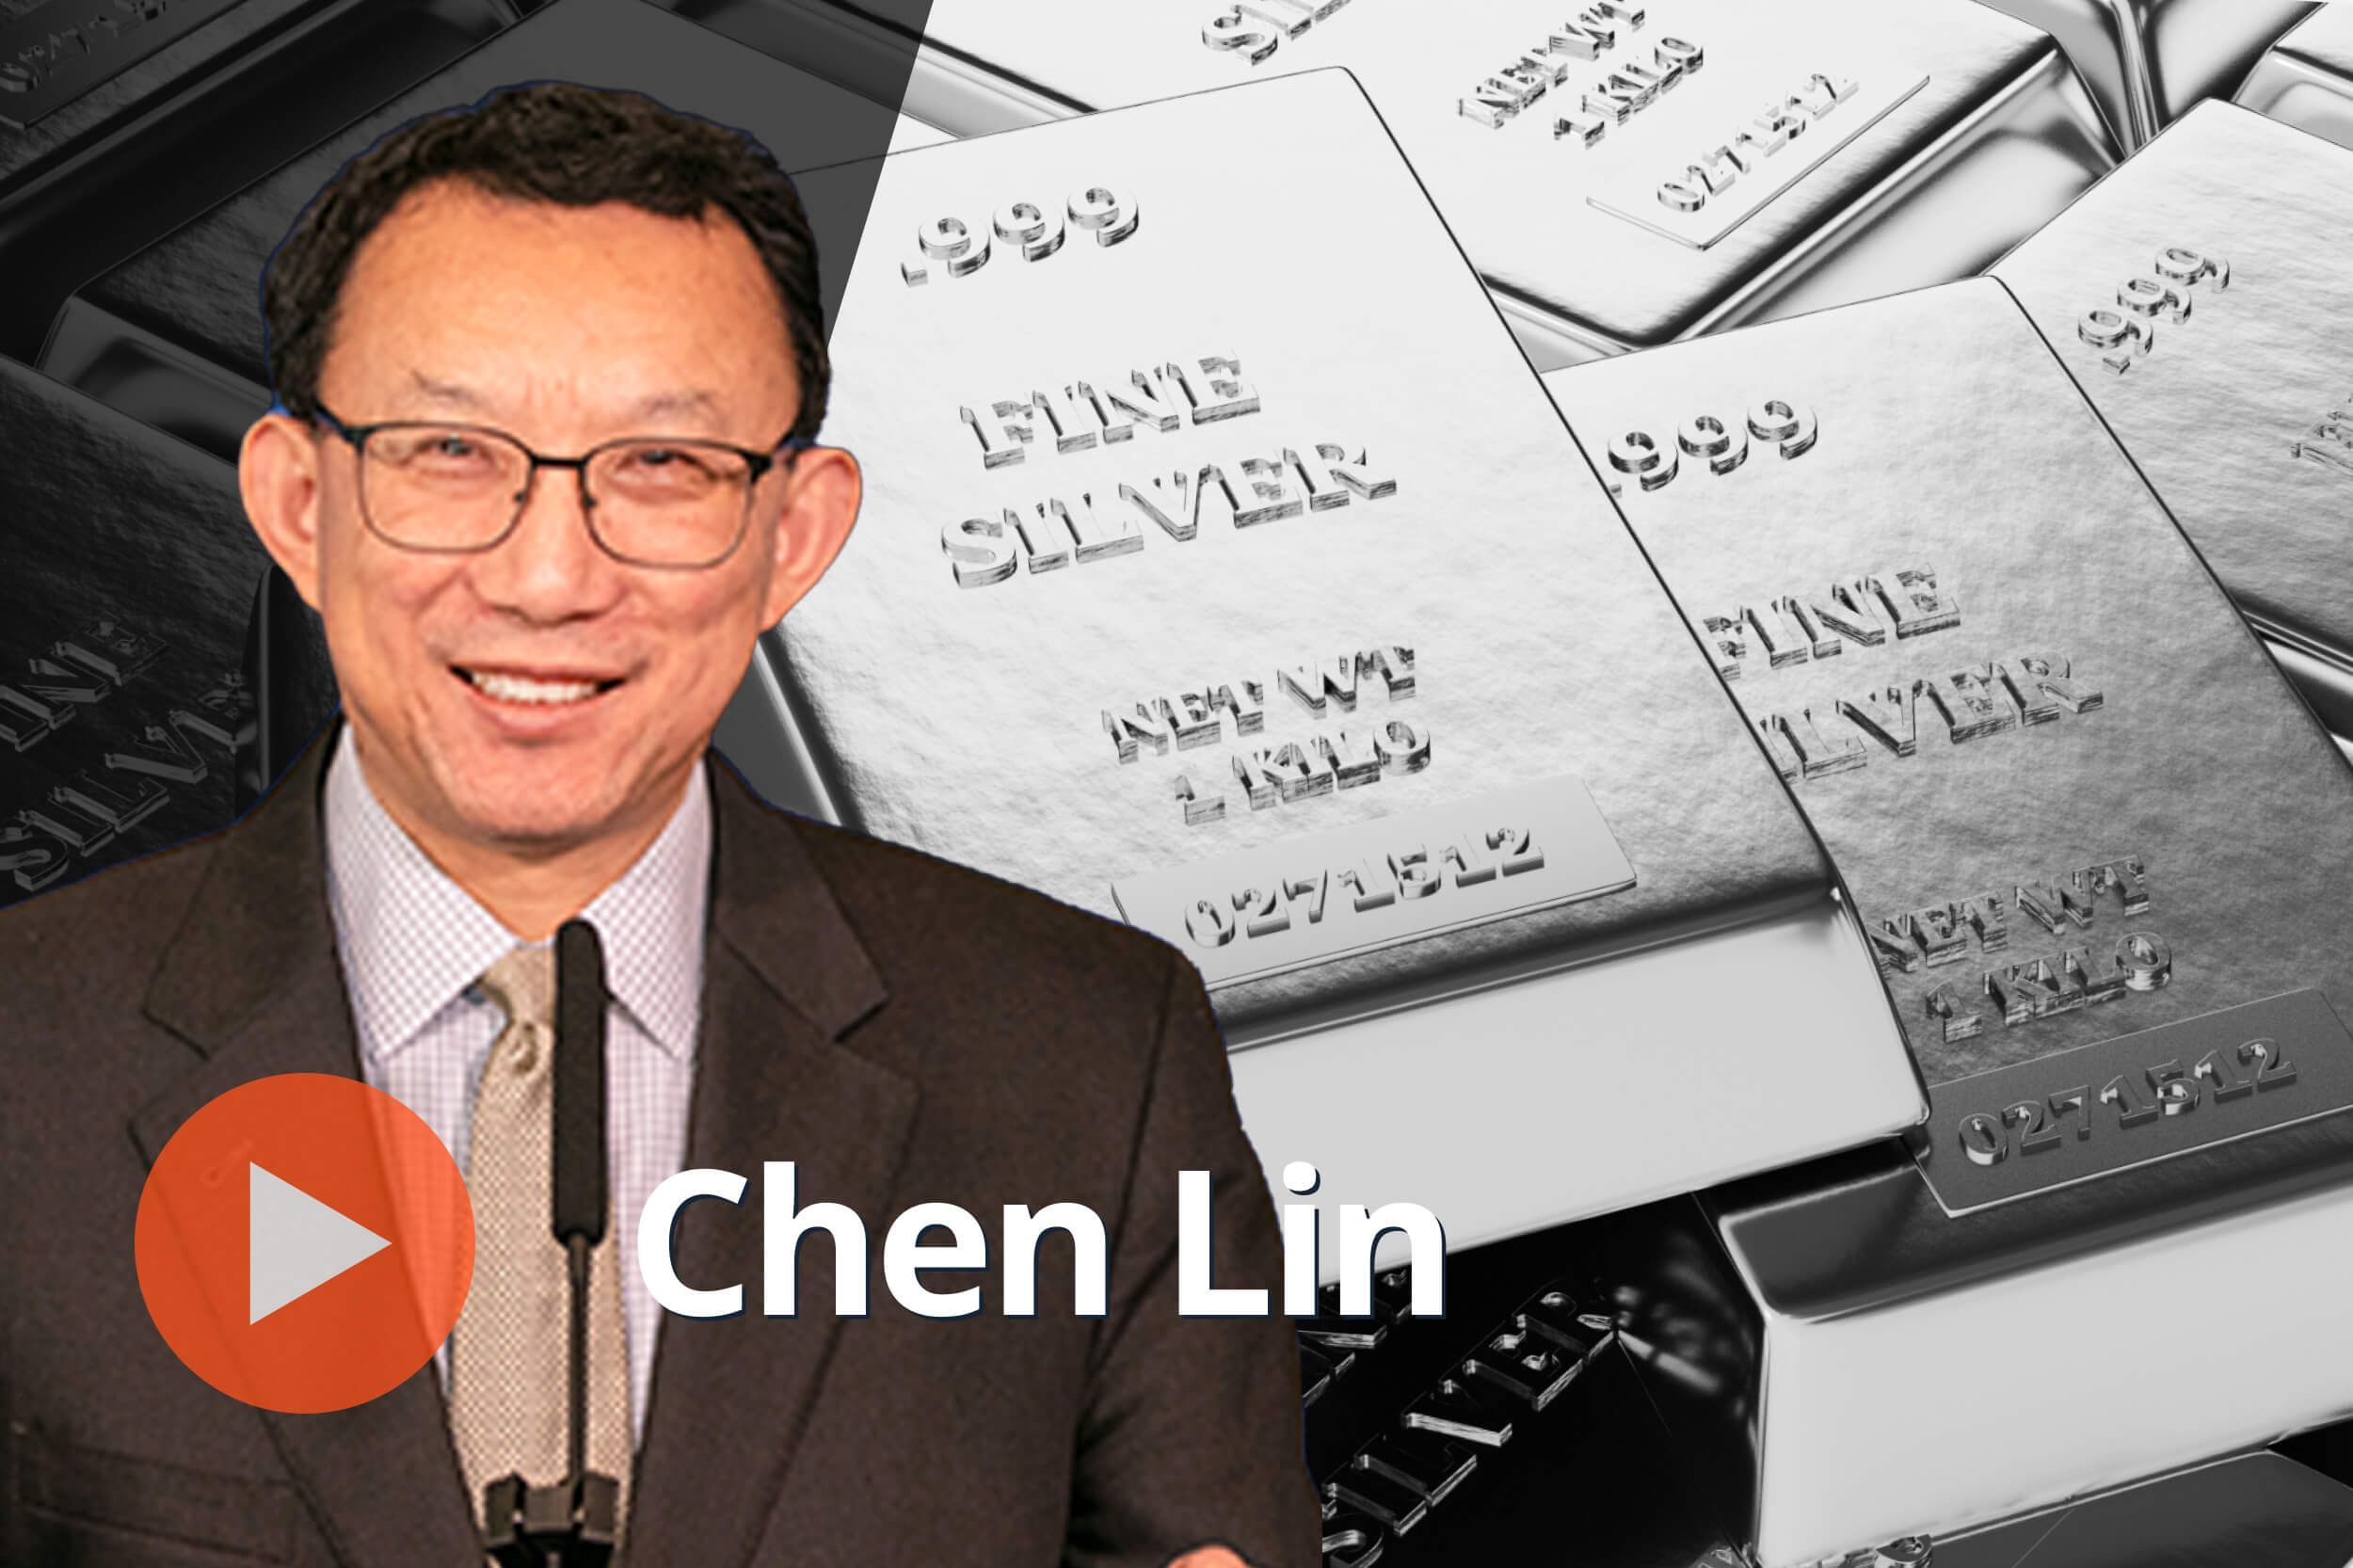 Chen Lin, silver bars. 